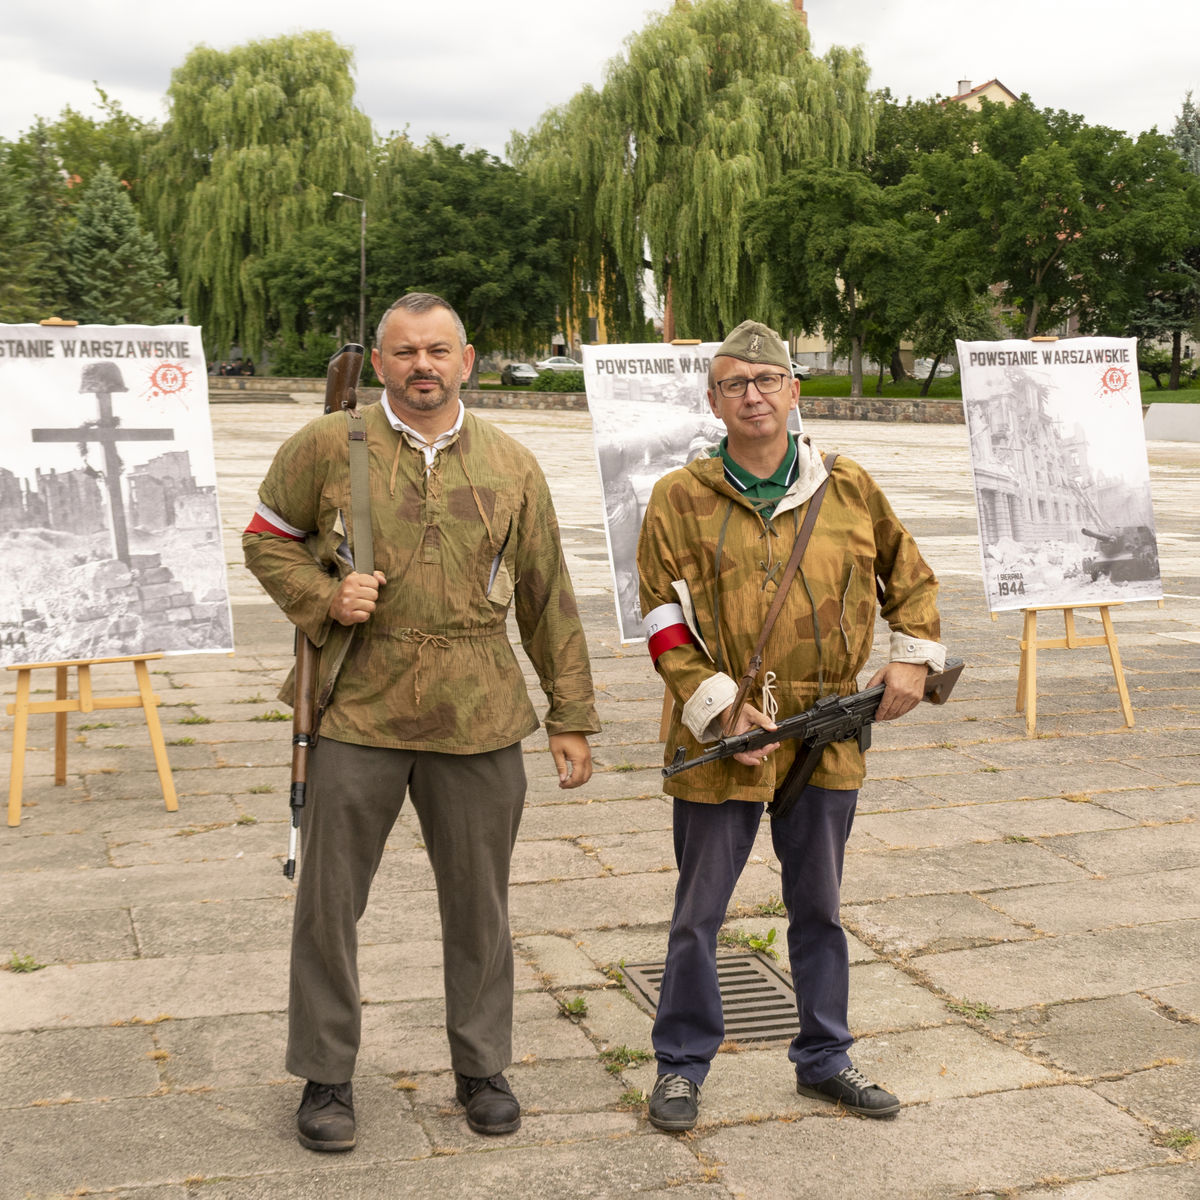 Uroczystości zorganizowało Stowarzyszenie Patria. Na zdjęciu Tomasz Kubat oraz Piotr Sekita (Prezes Stowarzyszenia) 2021 r.